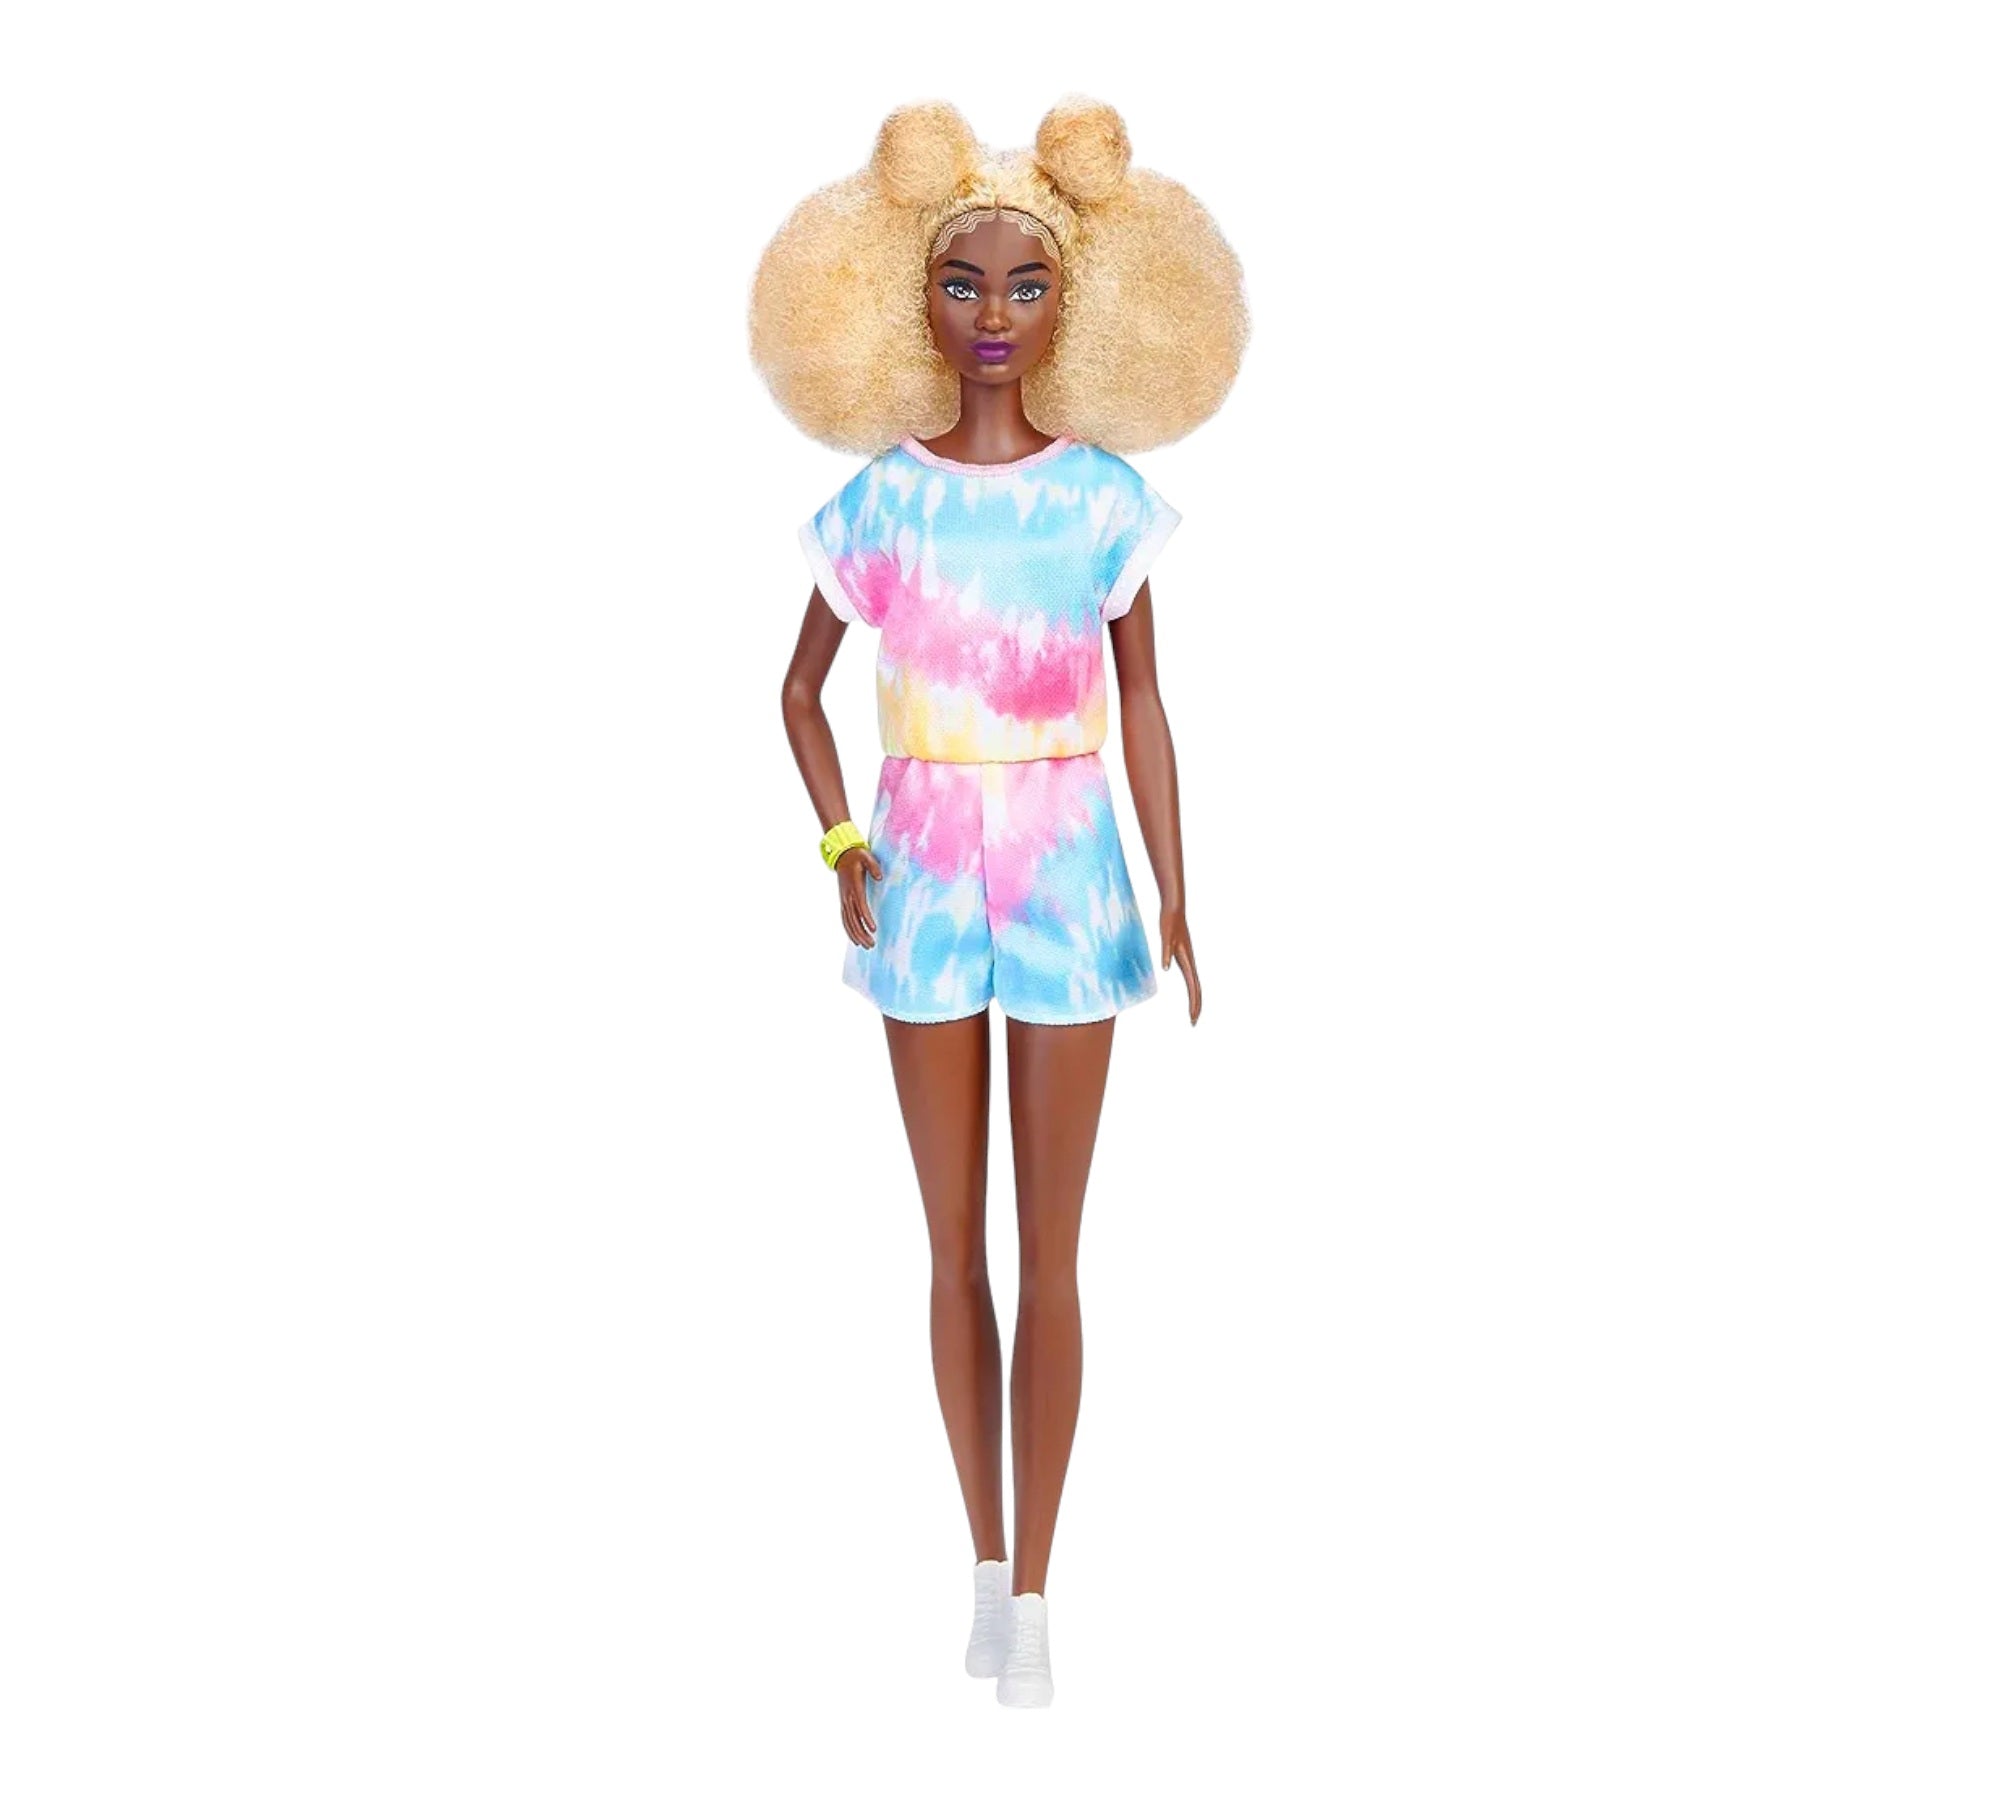 Speel, leer en groei met Barbie donker met Blond haar van Colourful Goodies - Inclusiviteit in elk detail.